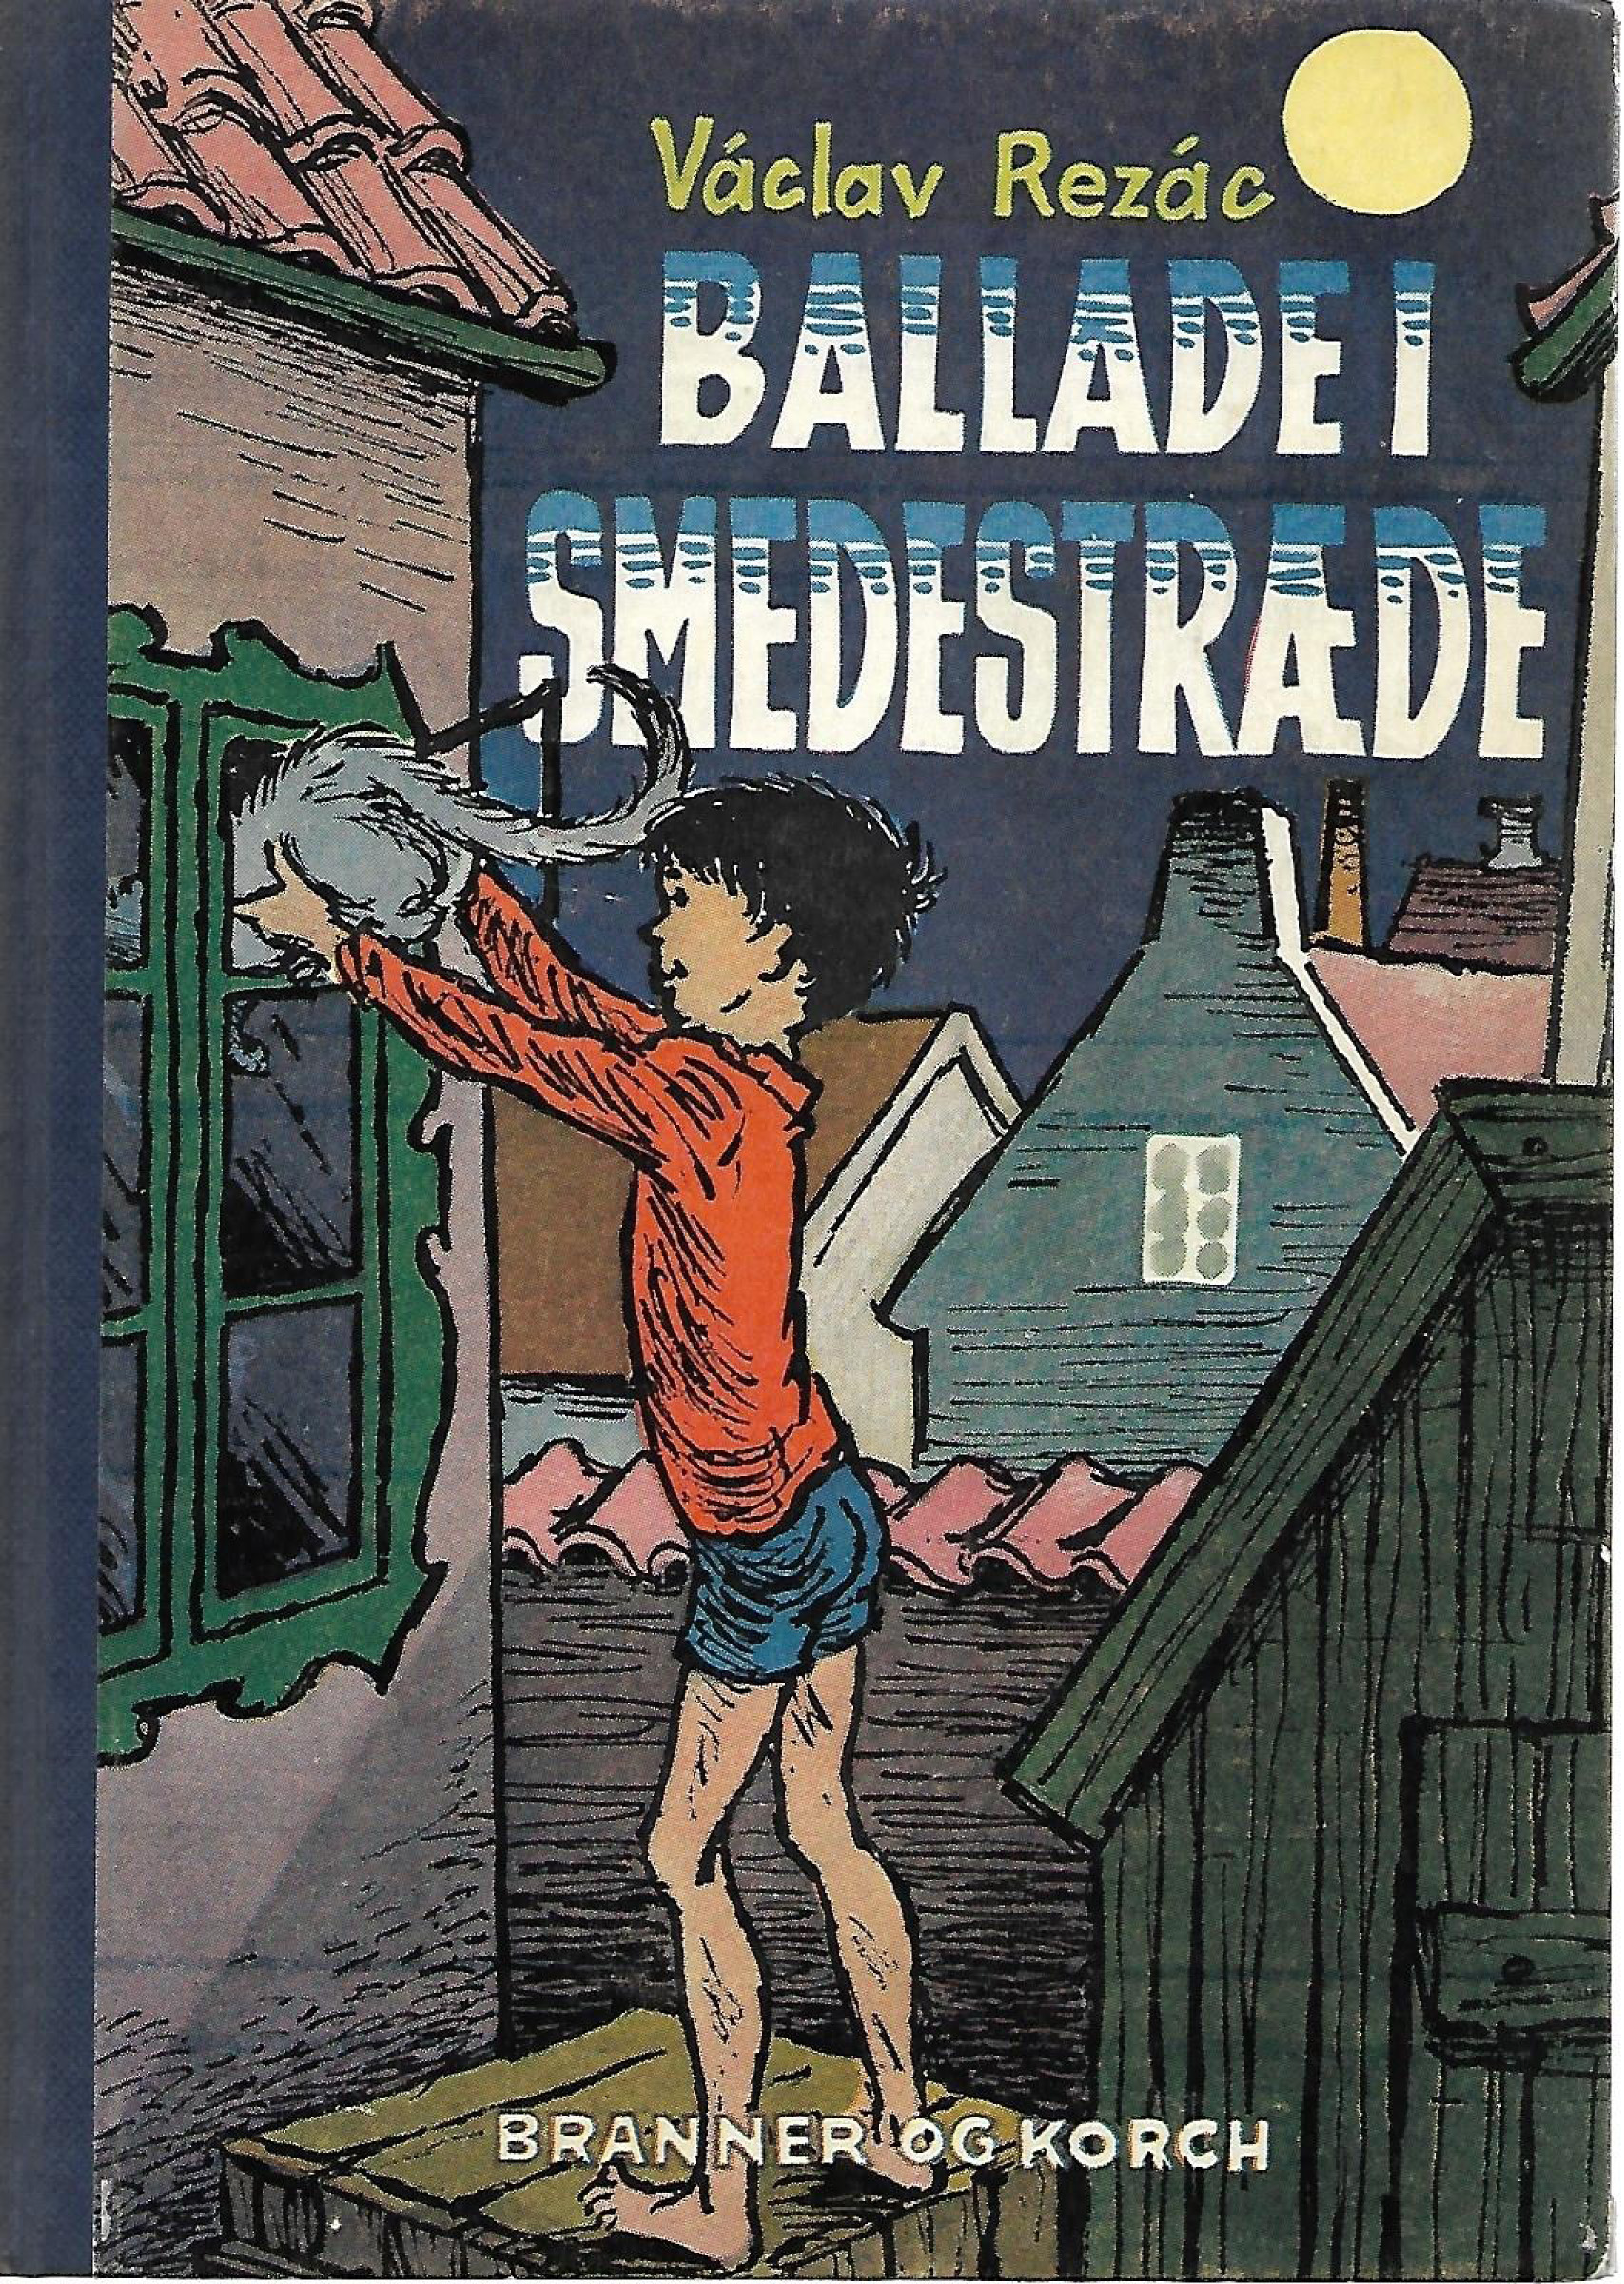 Ballade i Smedestræde - Václav Rezác 1957-1